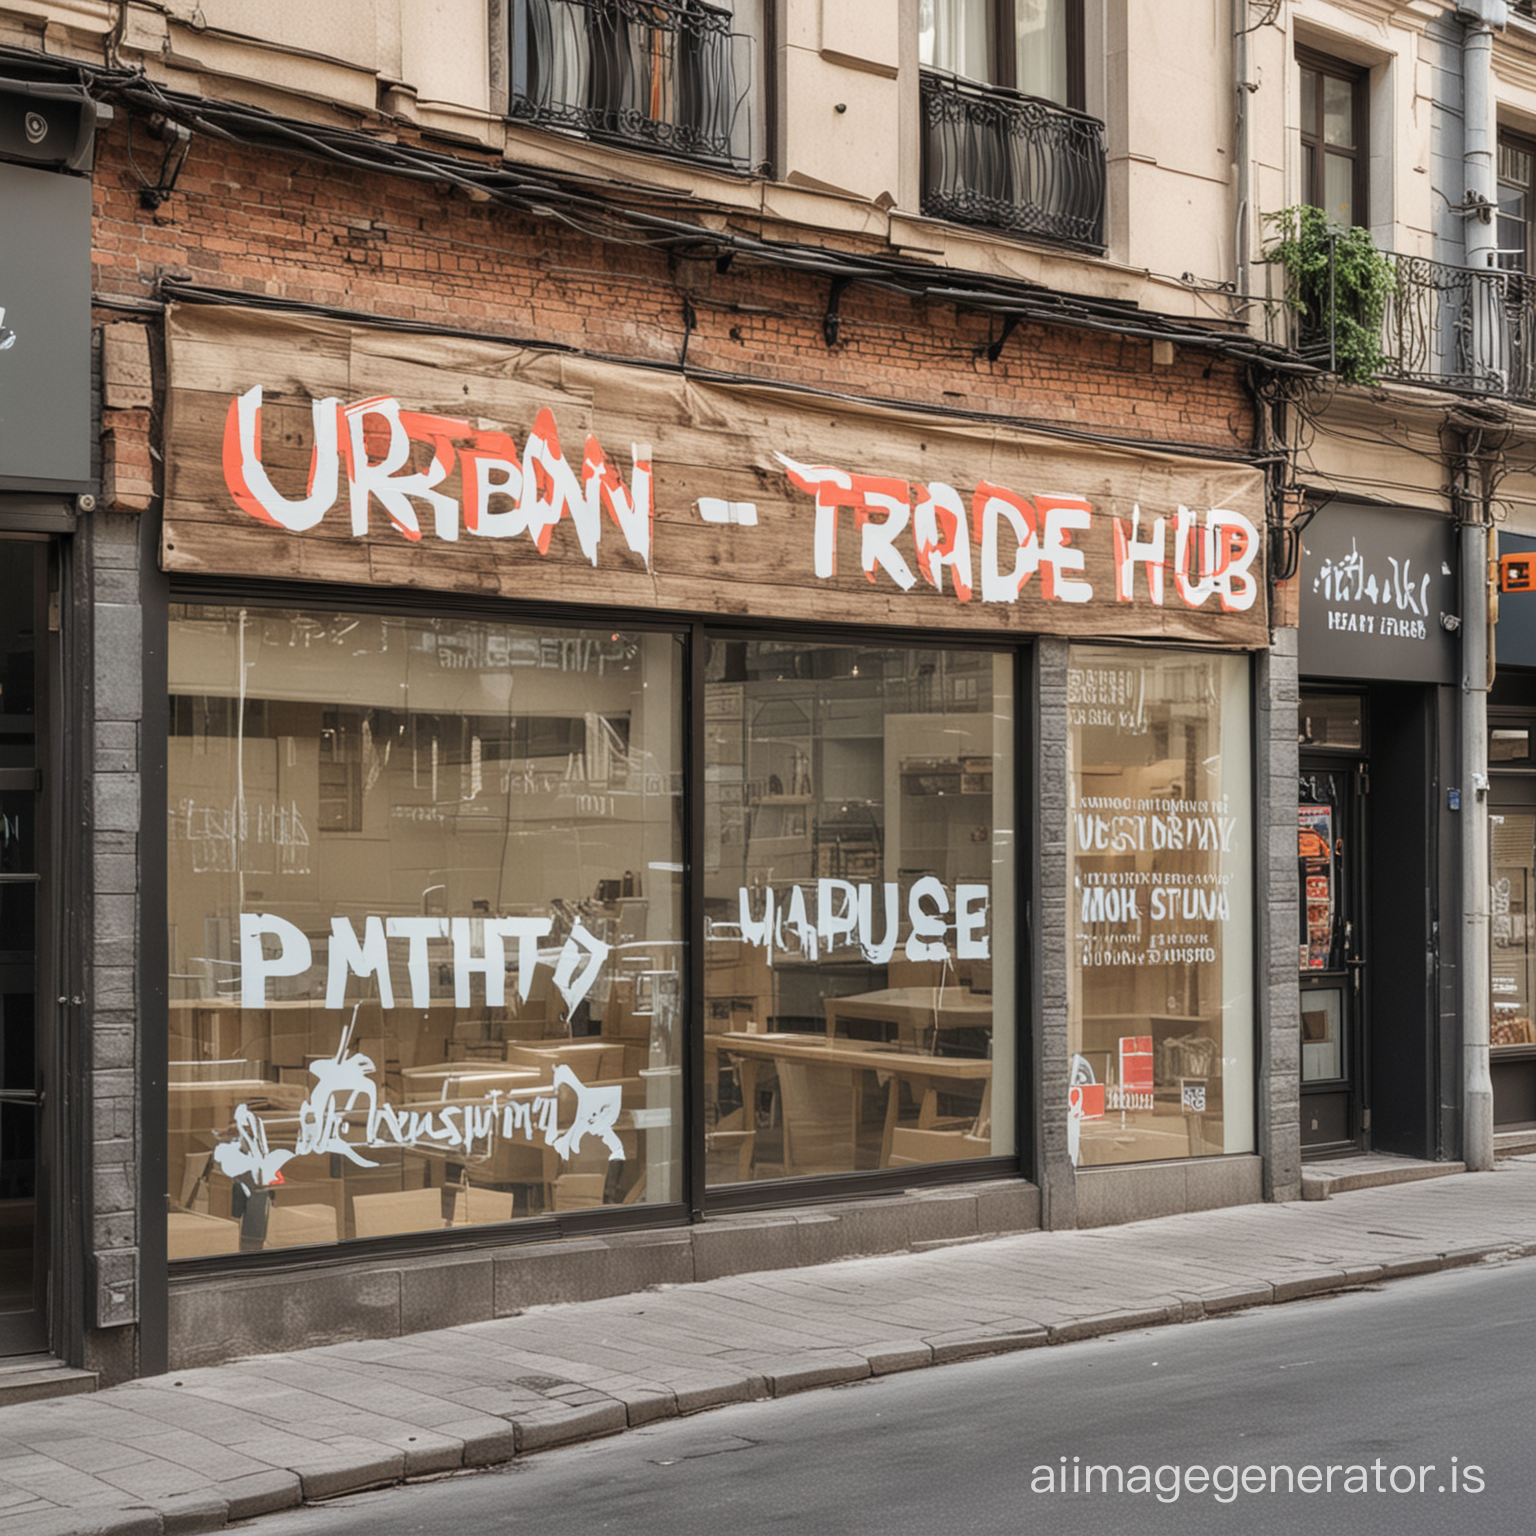 Urban trade hub название магазина